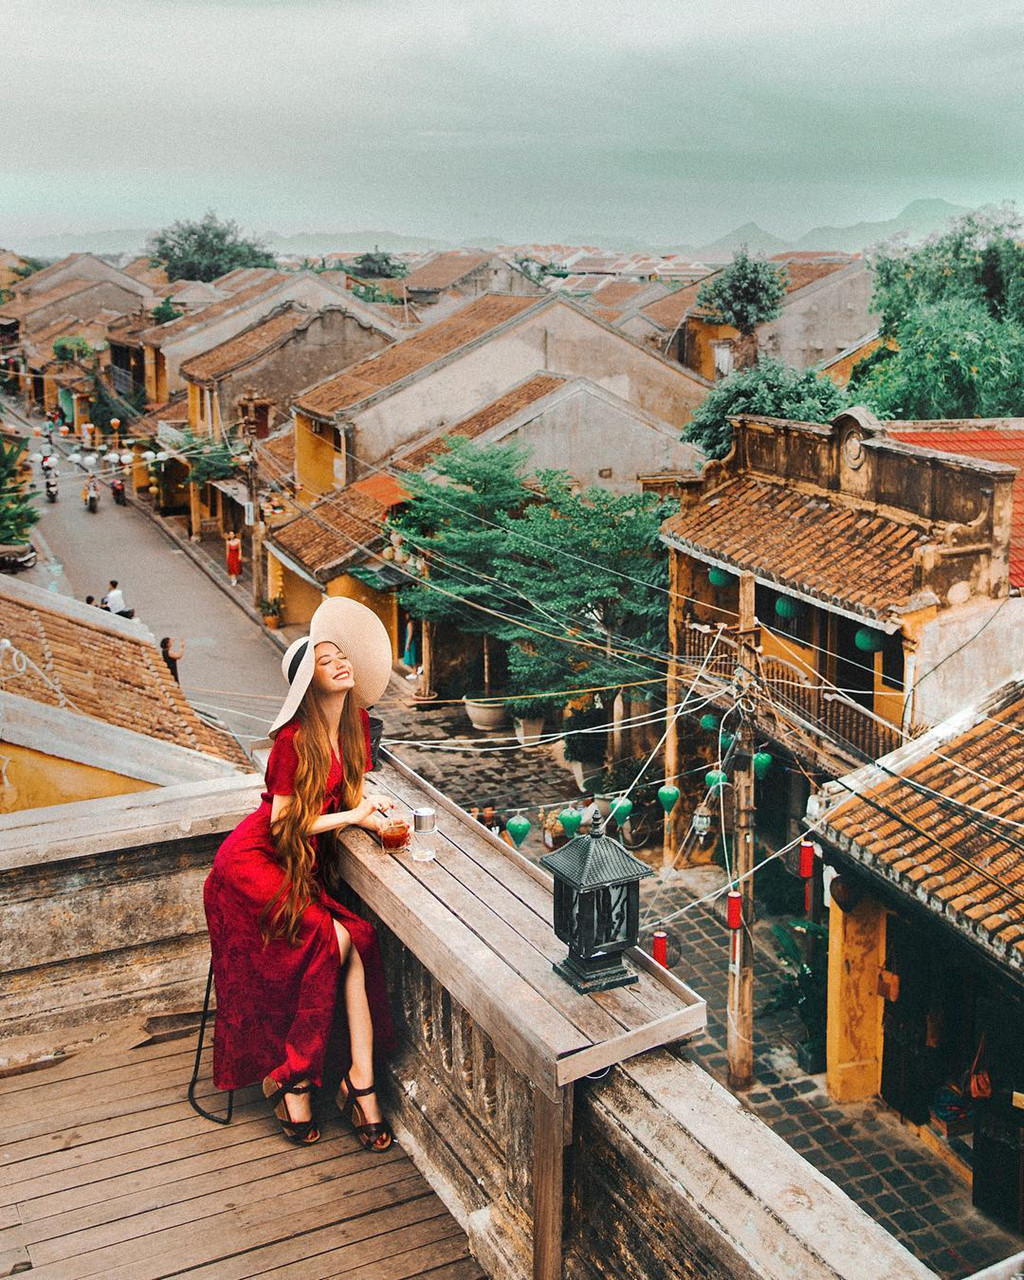 Mới đây, trên Instagram, Sarah Trần khiến nhiều người hâm mộ bất ngờ khi đăng ảnh check-in tại Việt Nam với dòng chú thích: "Cuối cùng tôi cũng trở về quê hương của cha rồi và không thể đợi để khoe với mọi người. Sarah đã về Việt Nam rồi".